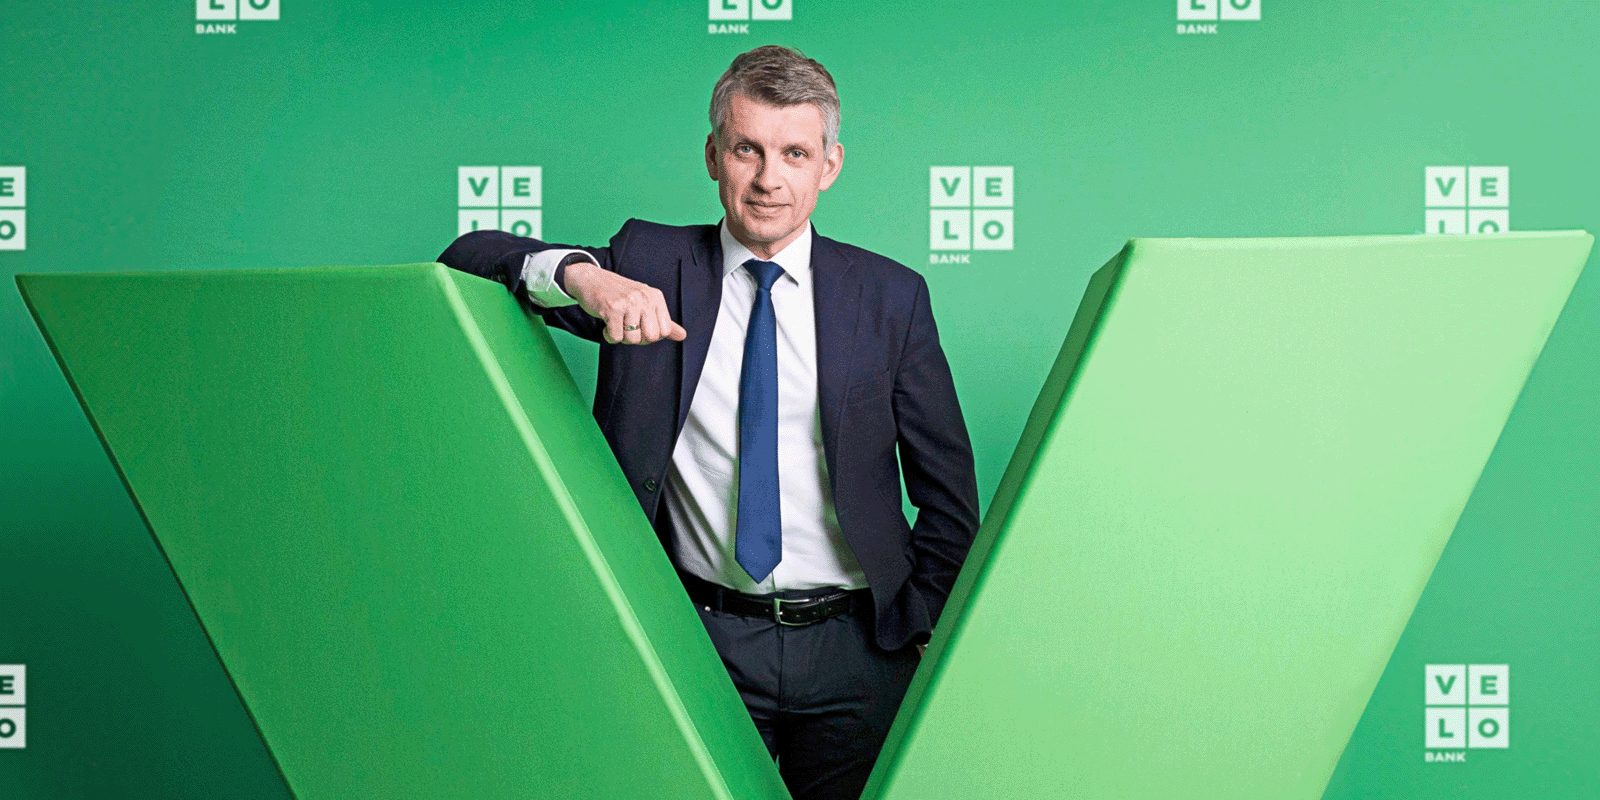 VeloBank z nowym inwestorem bankowość MEDIARUN.COM VELOBANK INWESTYCJA V1